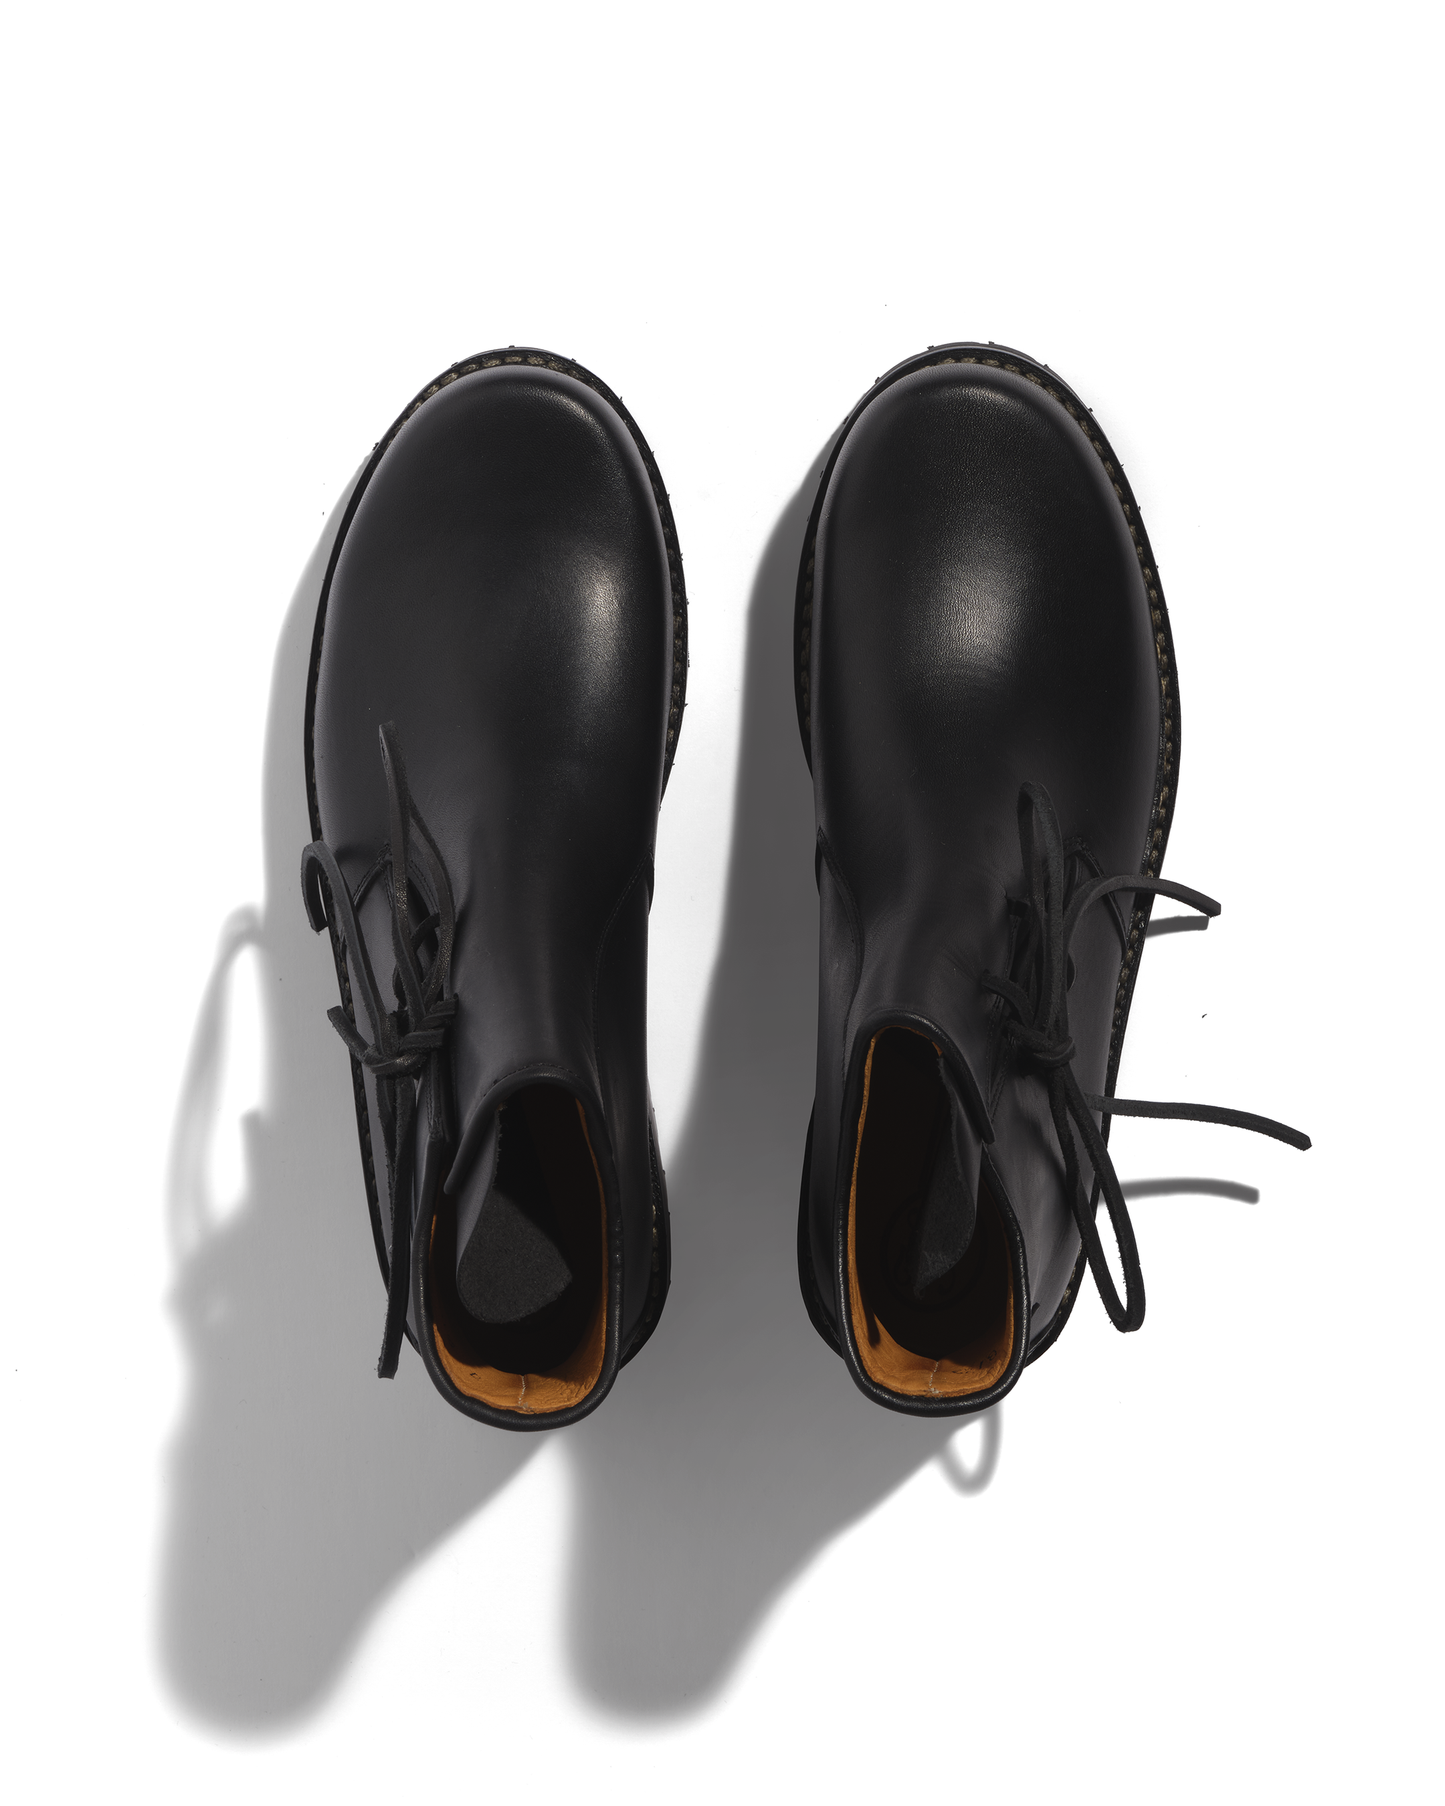 Men's black Haferl low shoes